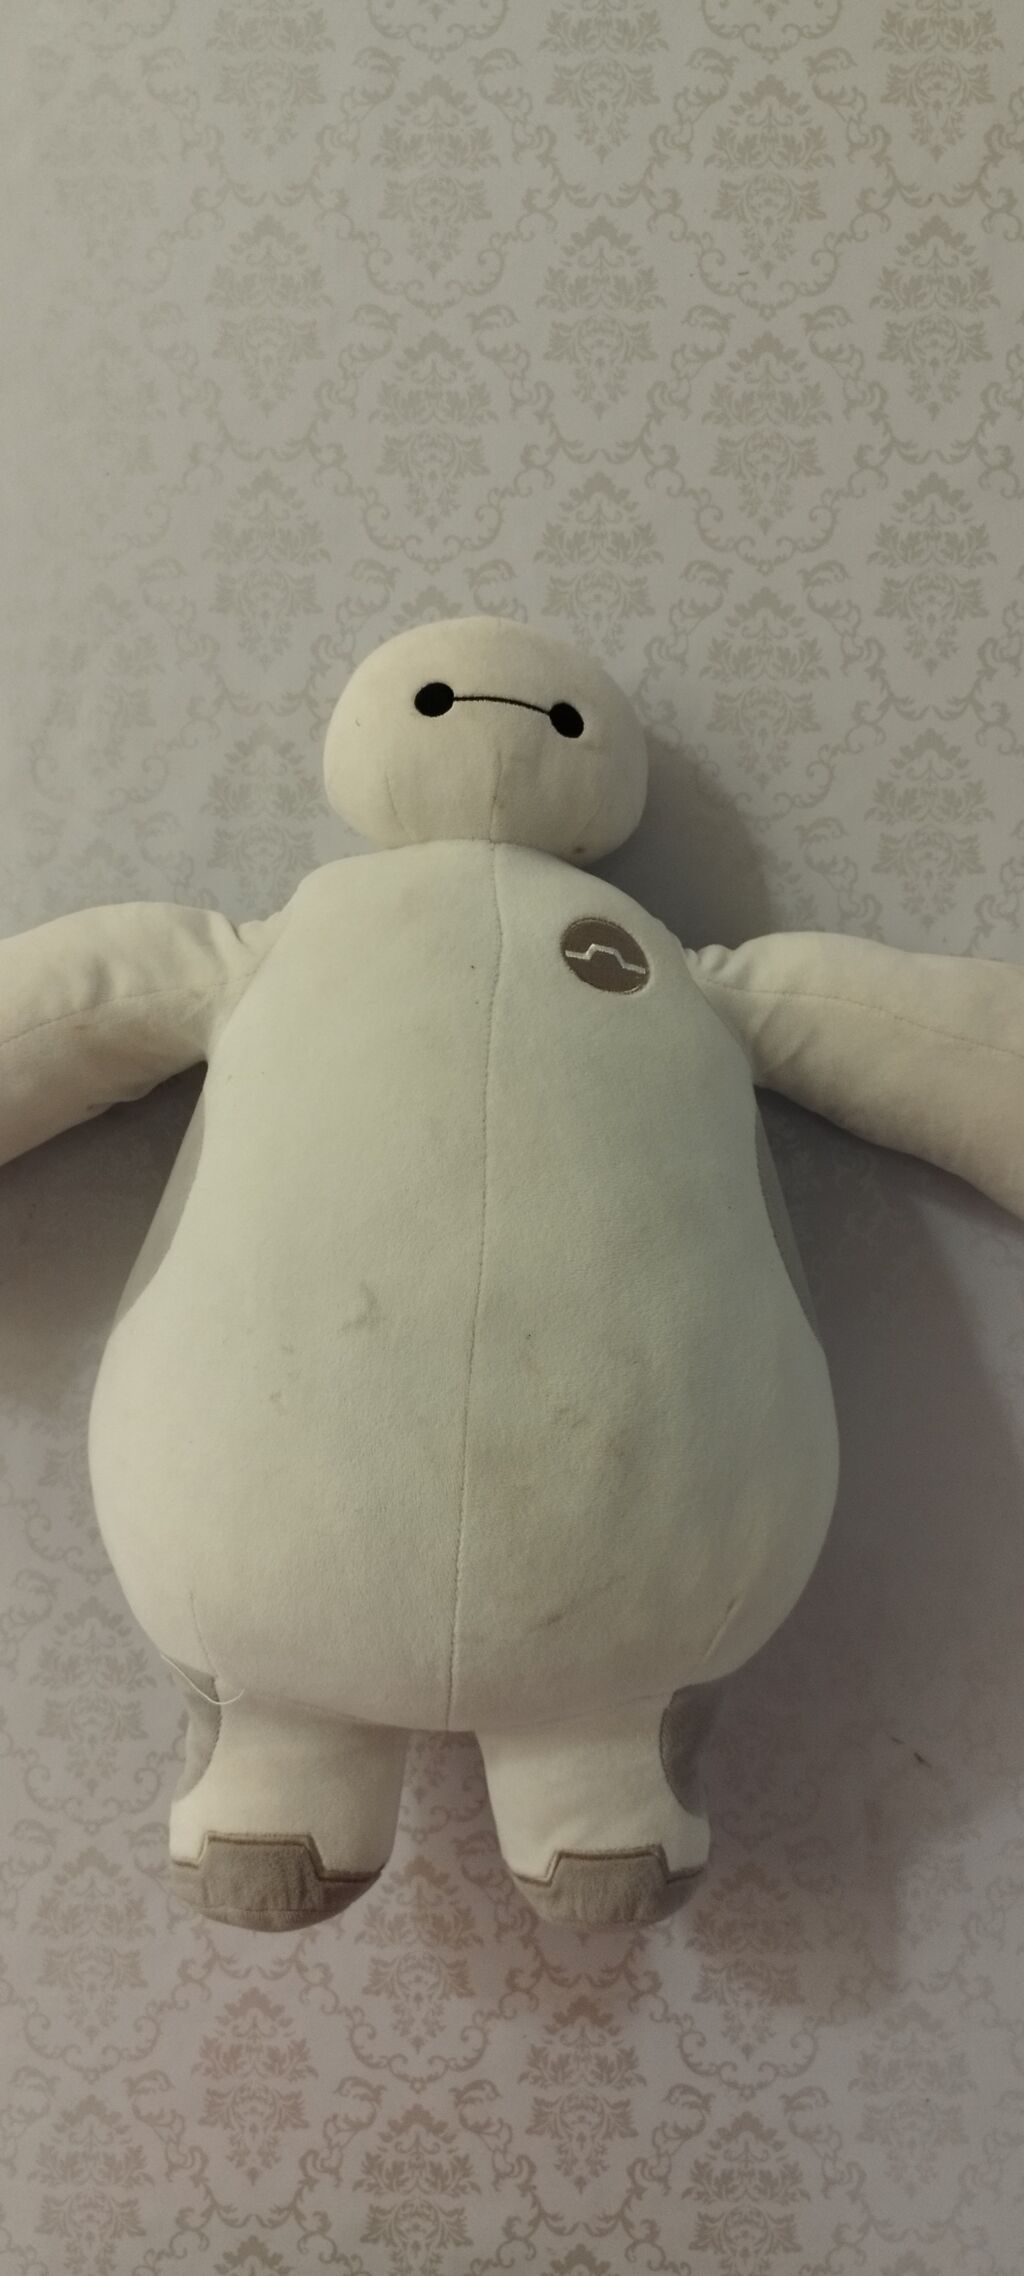 Мягкая игрушка Снеговик Олаф 50 см, из м/ф Холодное сердце от Disney